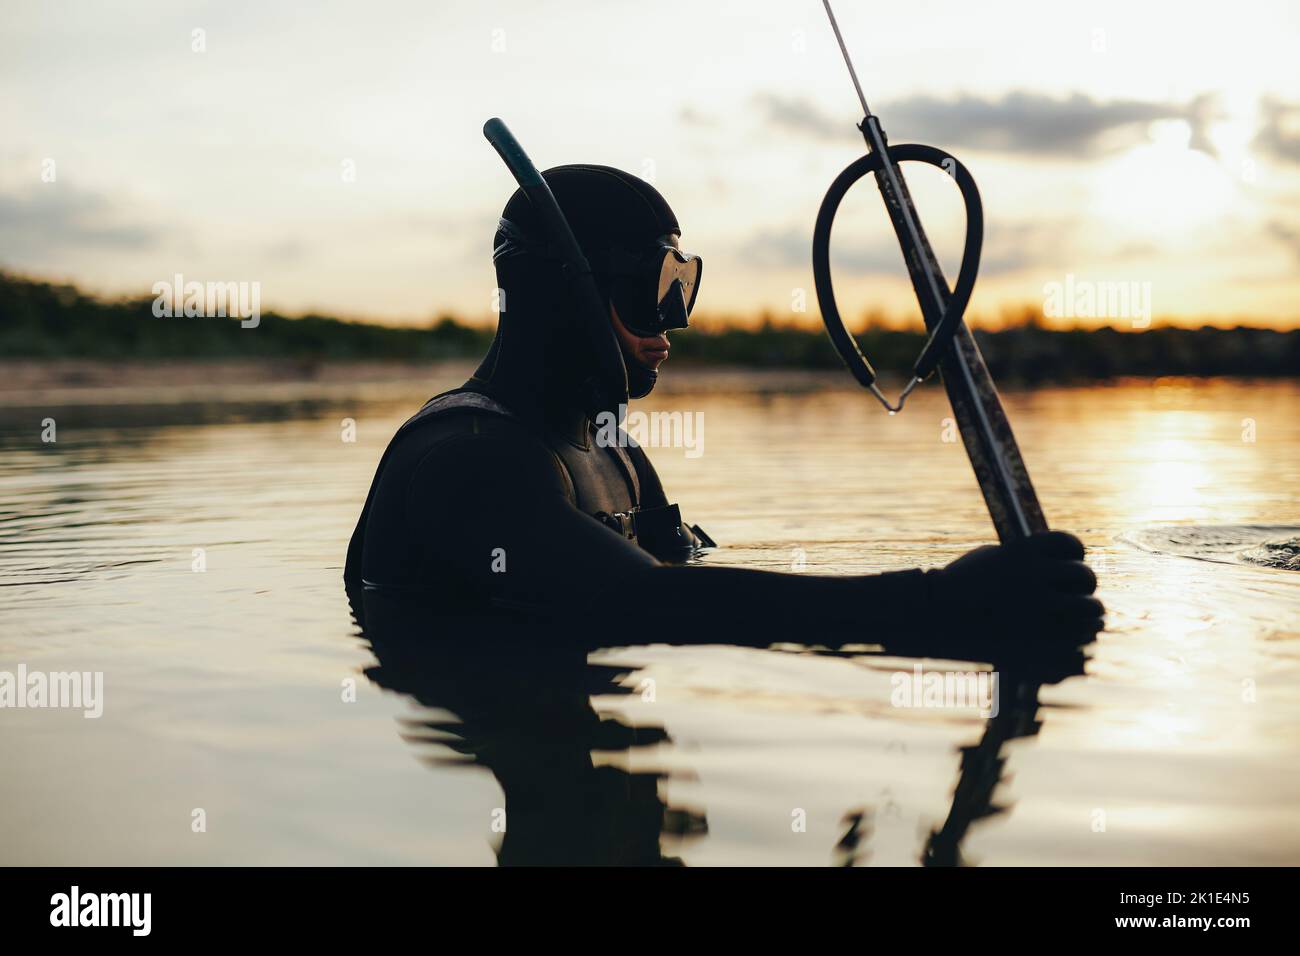 Le plongeur est le fer de lance de la pêche en utilisant un fer de lance dans la mer. Jeune homme aventureux portant un équipement de plongée et une combinaison au milieu de l'océan. Banque D'Images